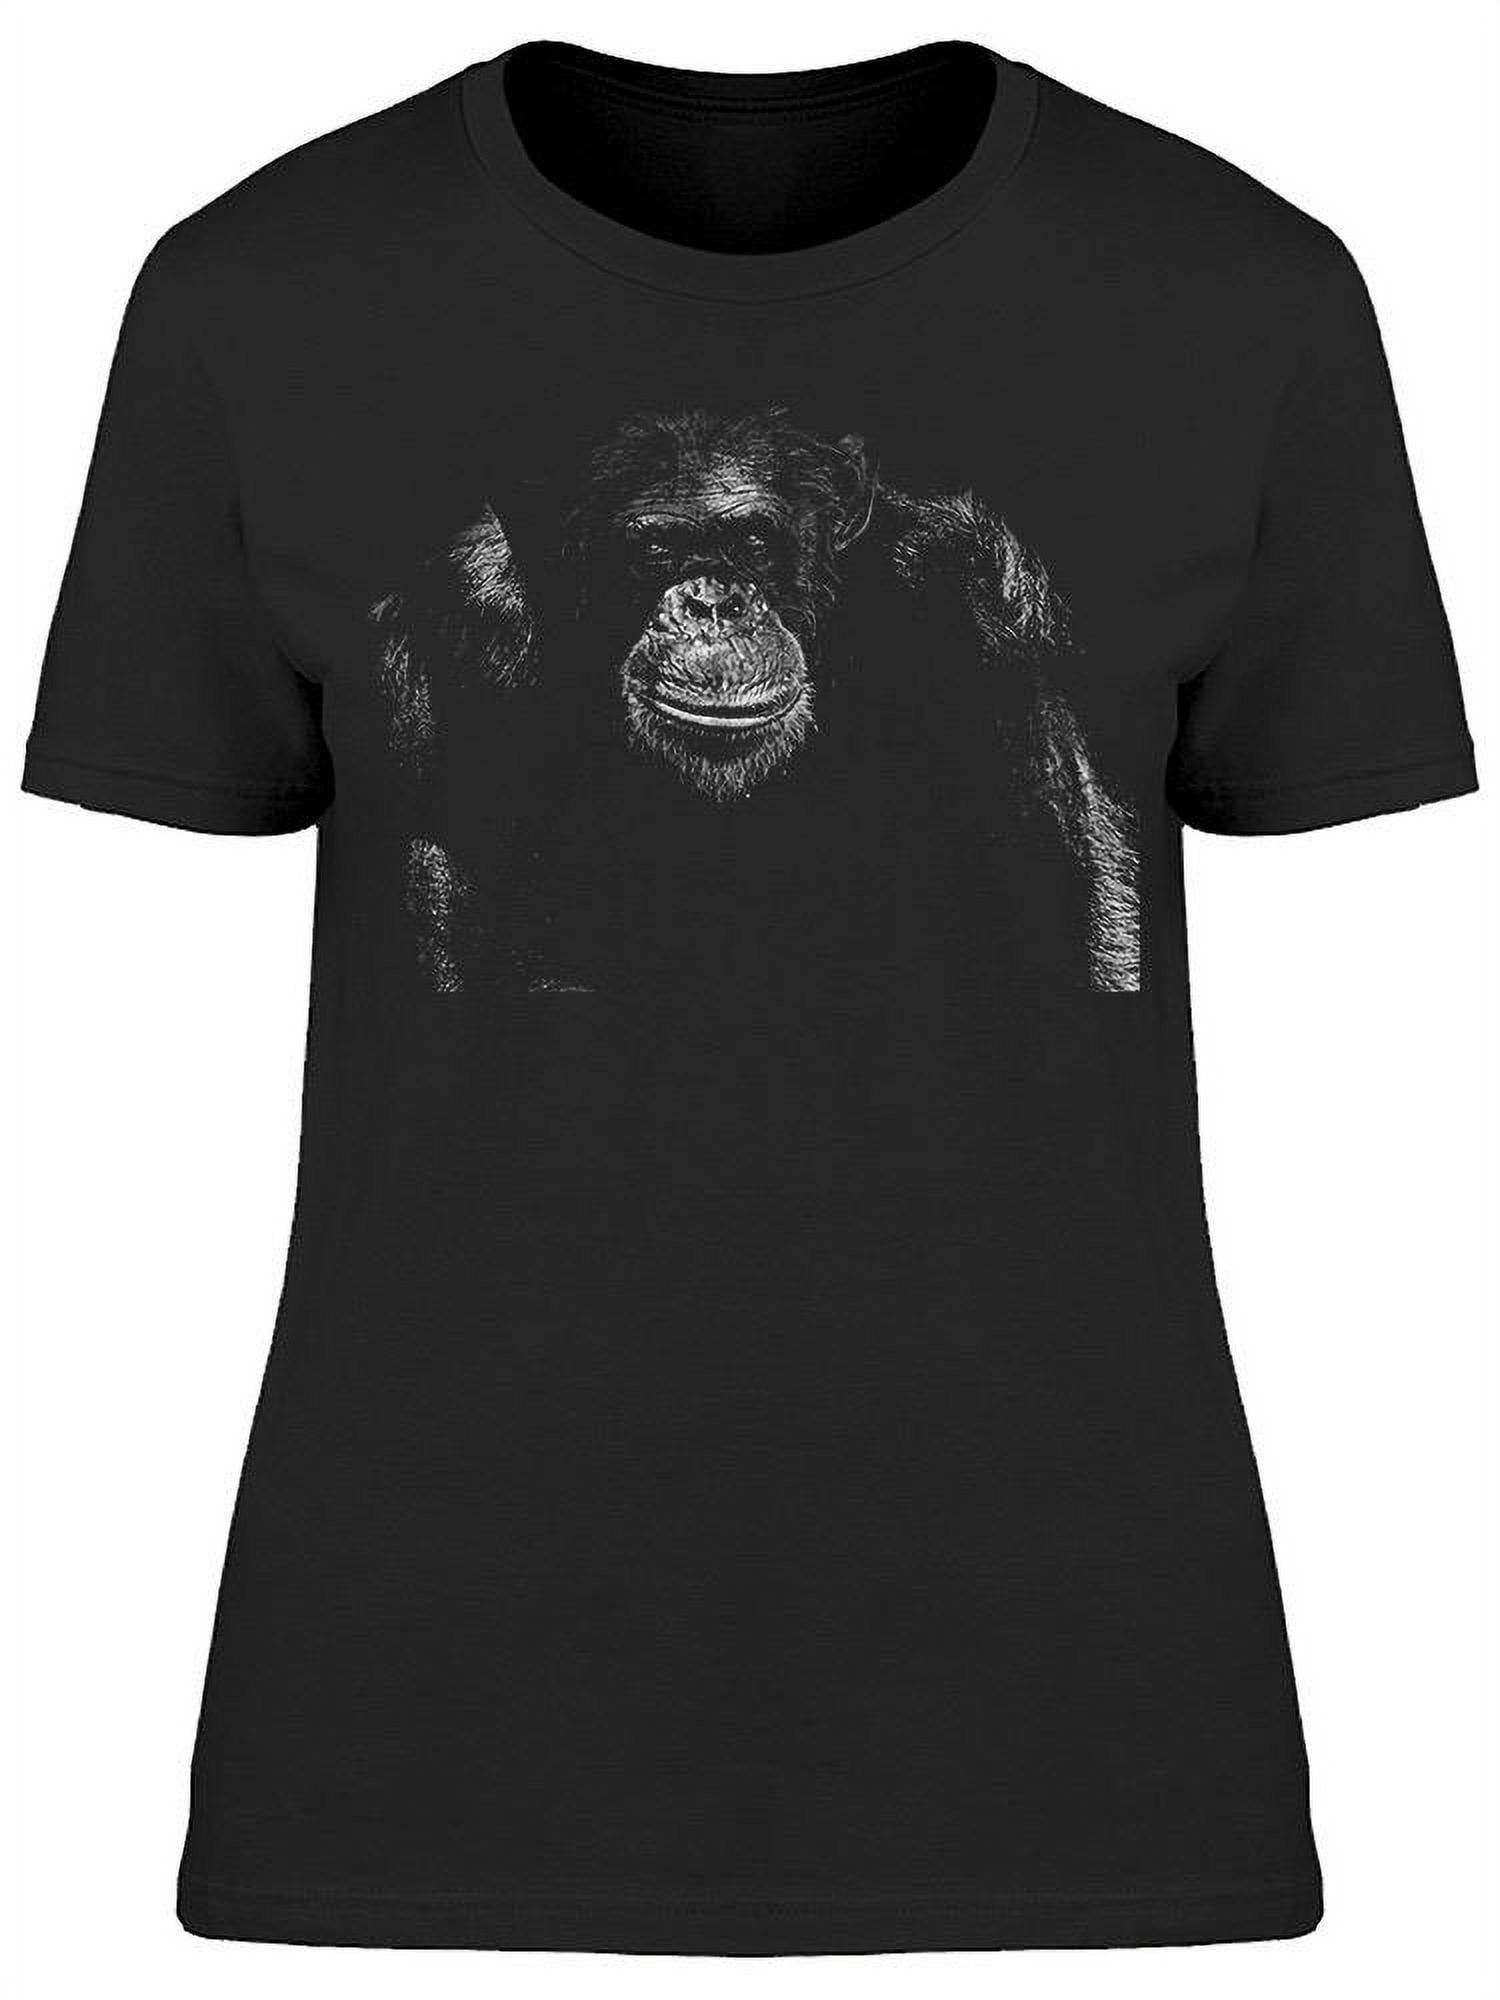 M, T2 Tops gray Top T-shirt BONOBO 38 Women Clothing Bonobo Women Tops Bonobo Women Tops T-shirts Bonobo Women T-shirts Bonobo Women 